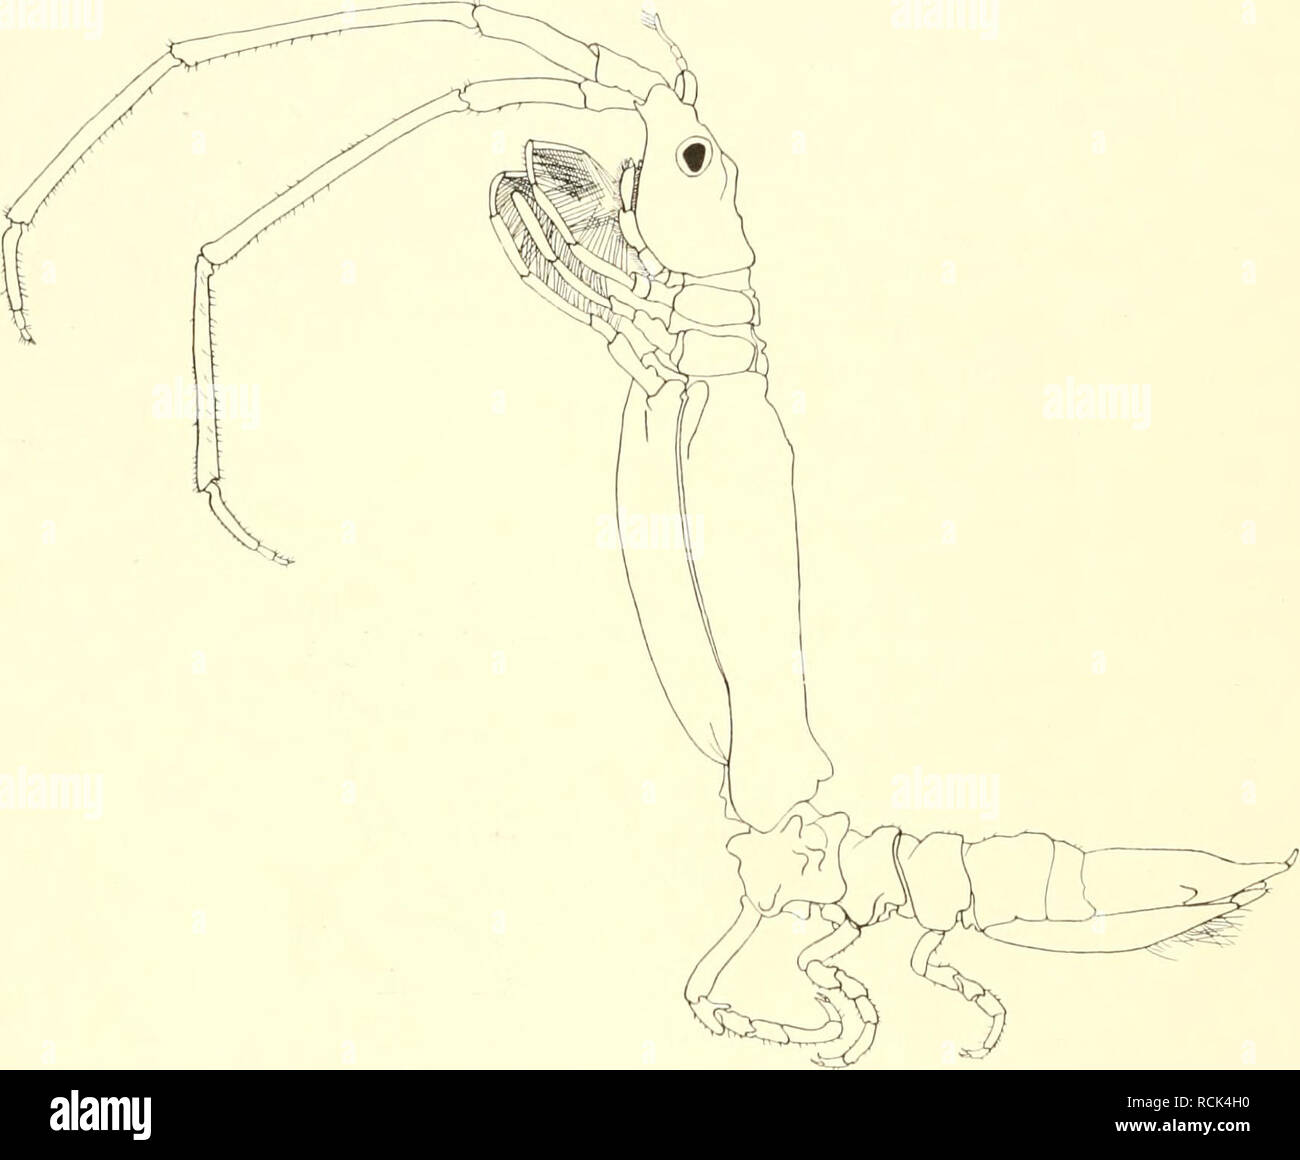 . Die Isopoden der Deutschen Sdpolar-Expedition, 1901-1903. Isopoda z Antarctic regions. 524 Deutsche Södpolar-Expedition. koiiinit daher zum Vergleich in Betracht. Die von 0hlix beschriebene A. falclandica war nur 5 mm groß, während mein Exemplar von Kerguelen 16,5 mm Körperlänge hat. Die große Antenne mißt etwa 12 mm luul das Endsegment 4,5 mm, so daß diese Verhältnisse mit denen bei jener Art übereinstimmen, bei der die Antennen bis zum Ende des Rumpfes reichen. Verschieden bei beiden Arten ist die Länge des zweiten und dritten Antennengliedes, welche bei A. faldandim ungefähr gleich lang s Stock Photo